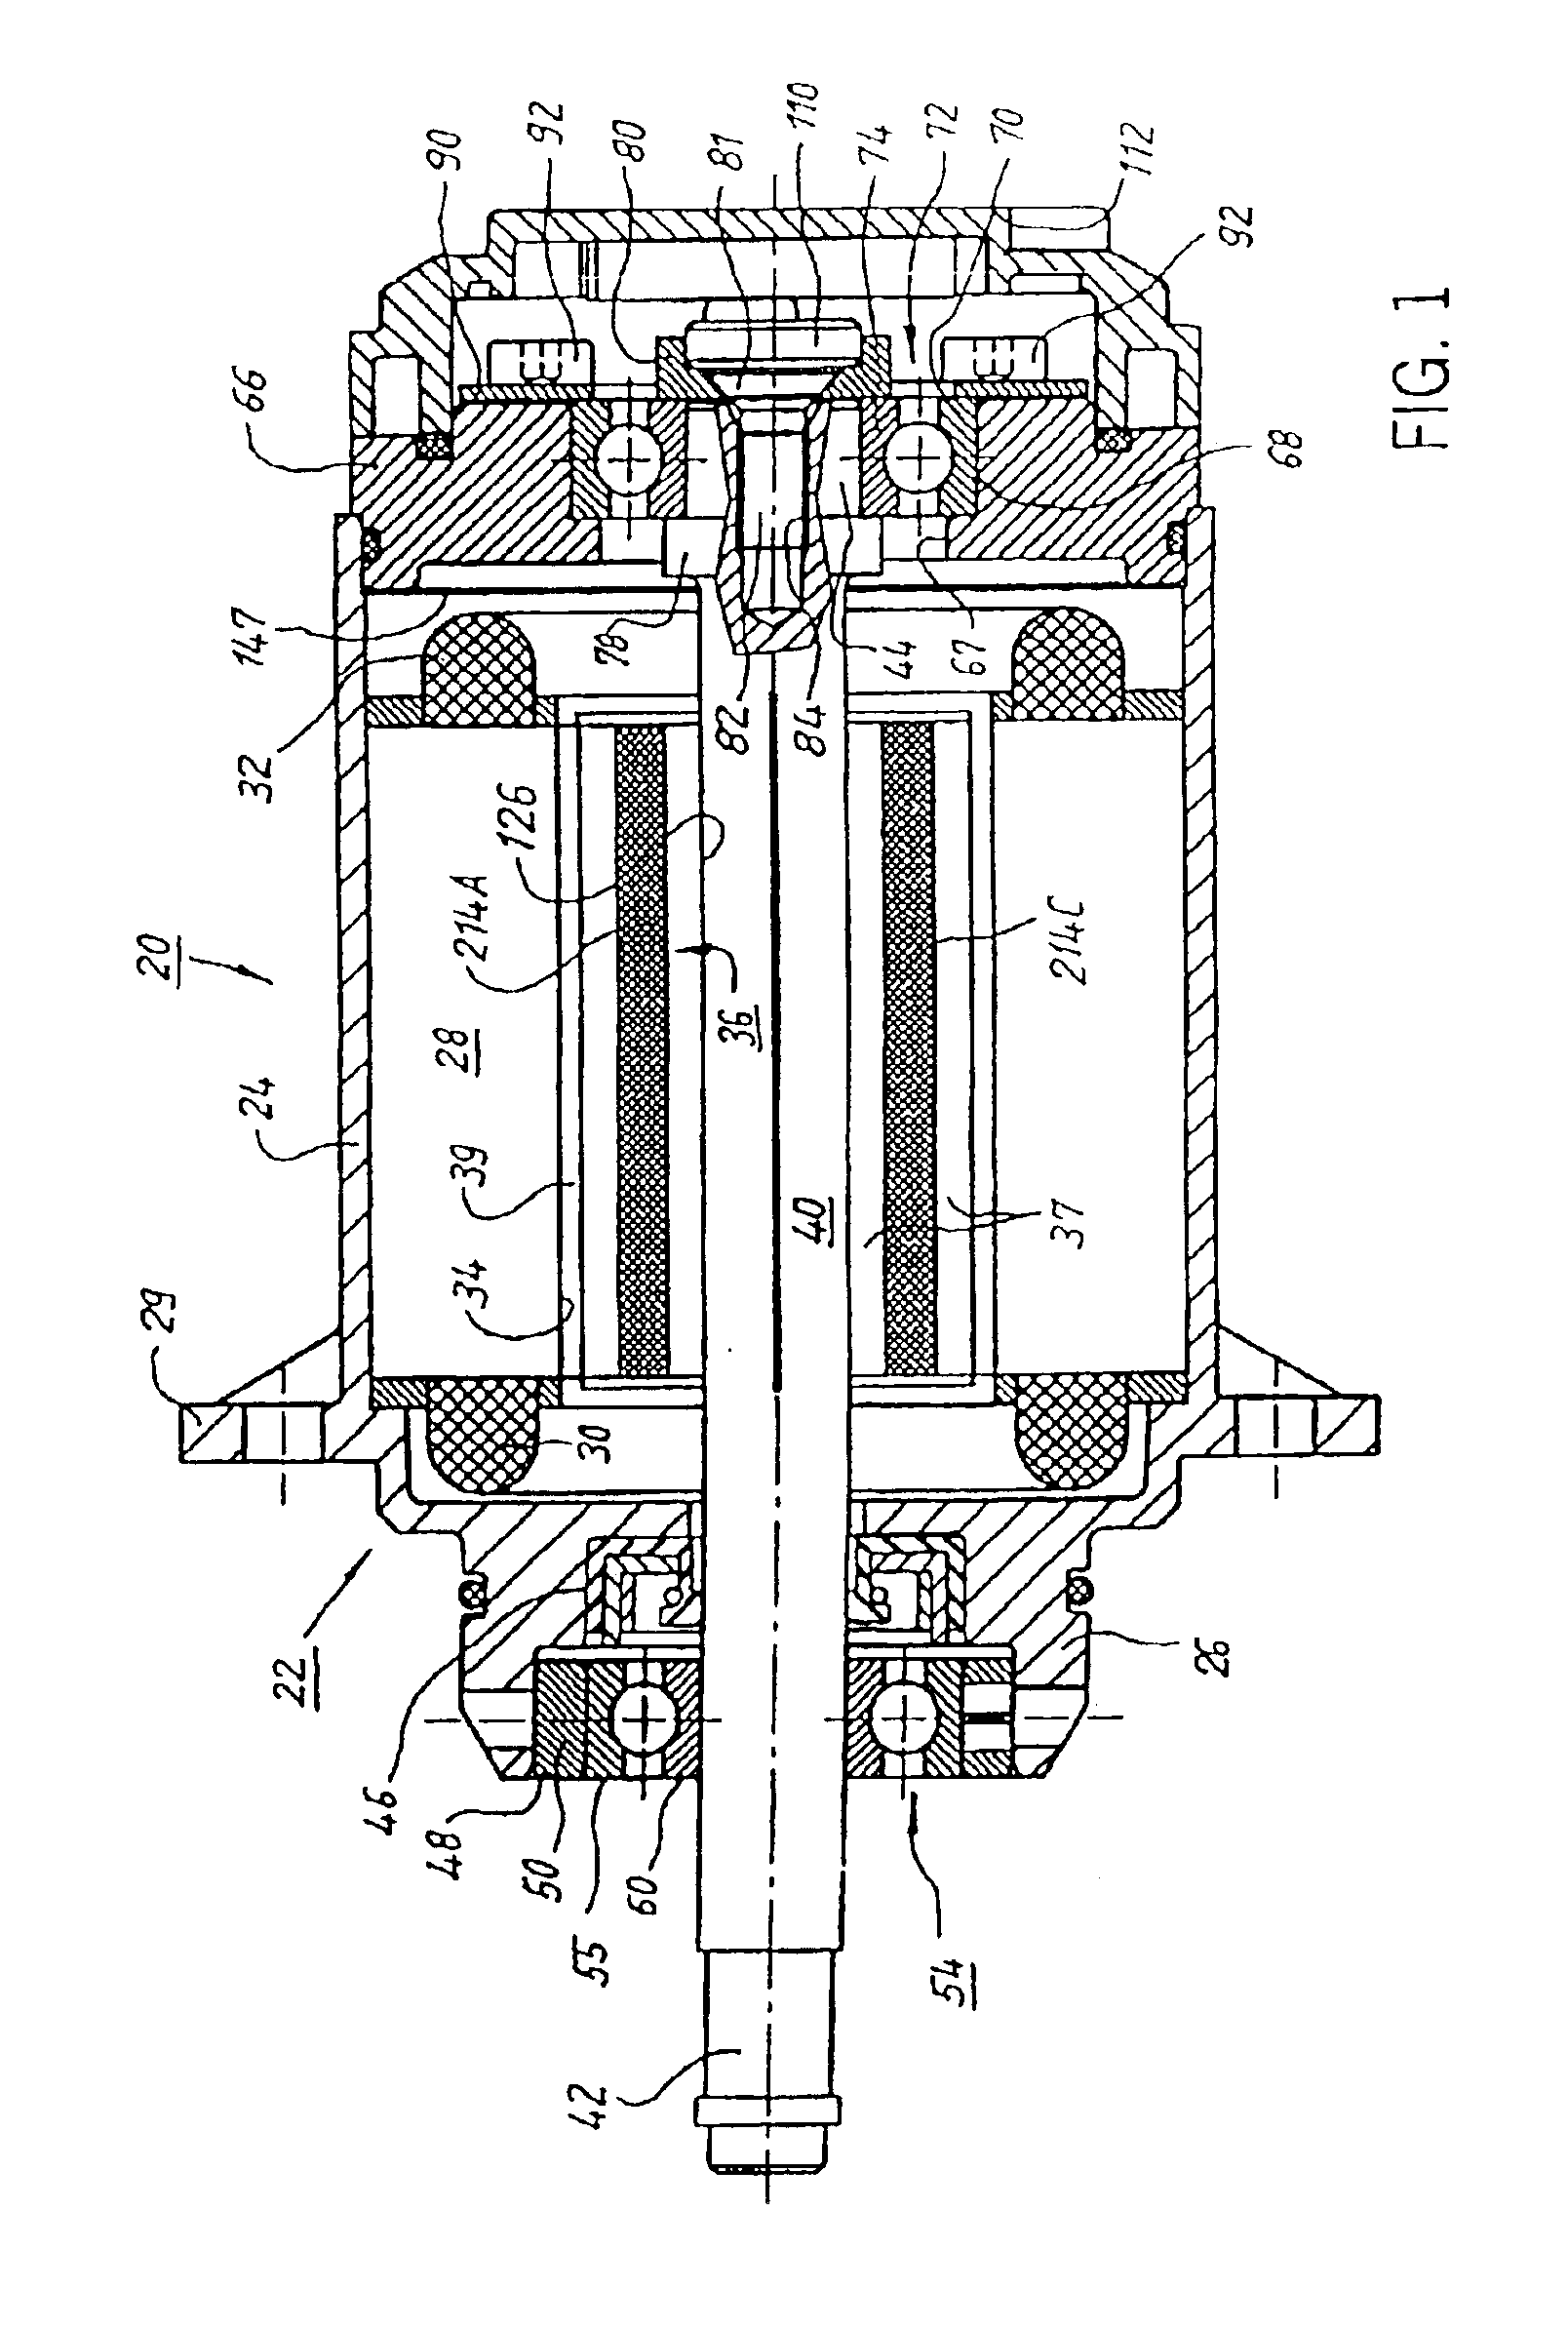 Internal rotor motor